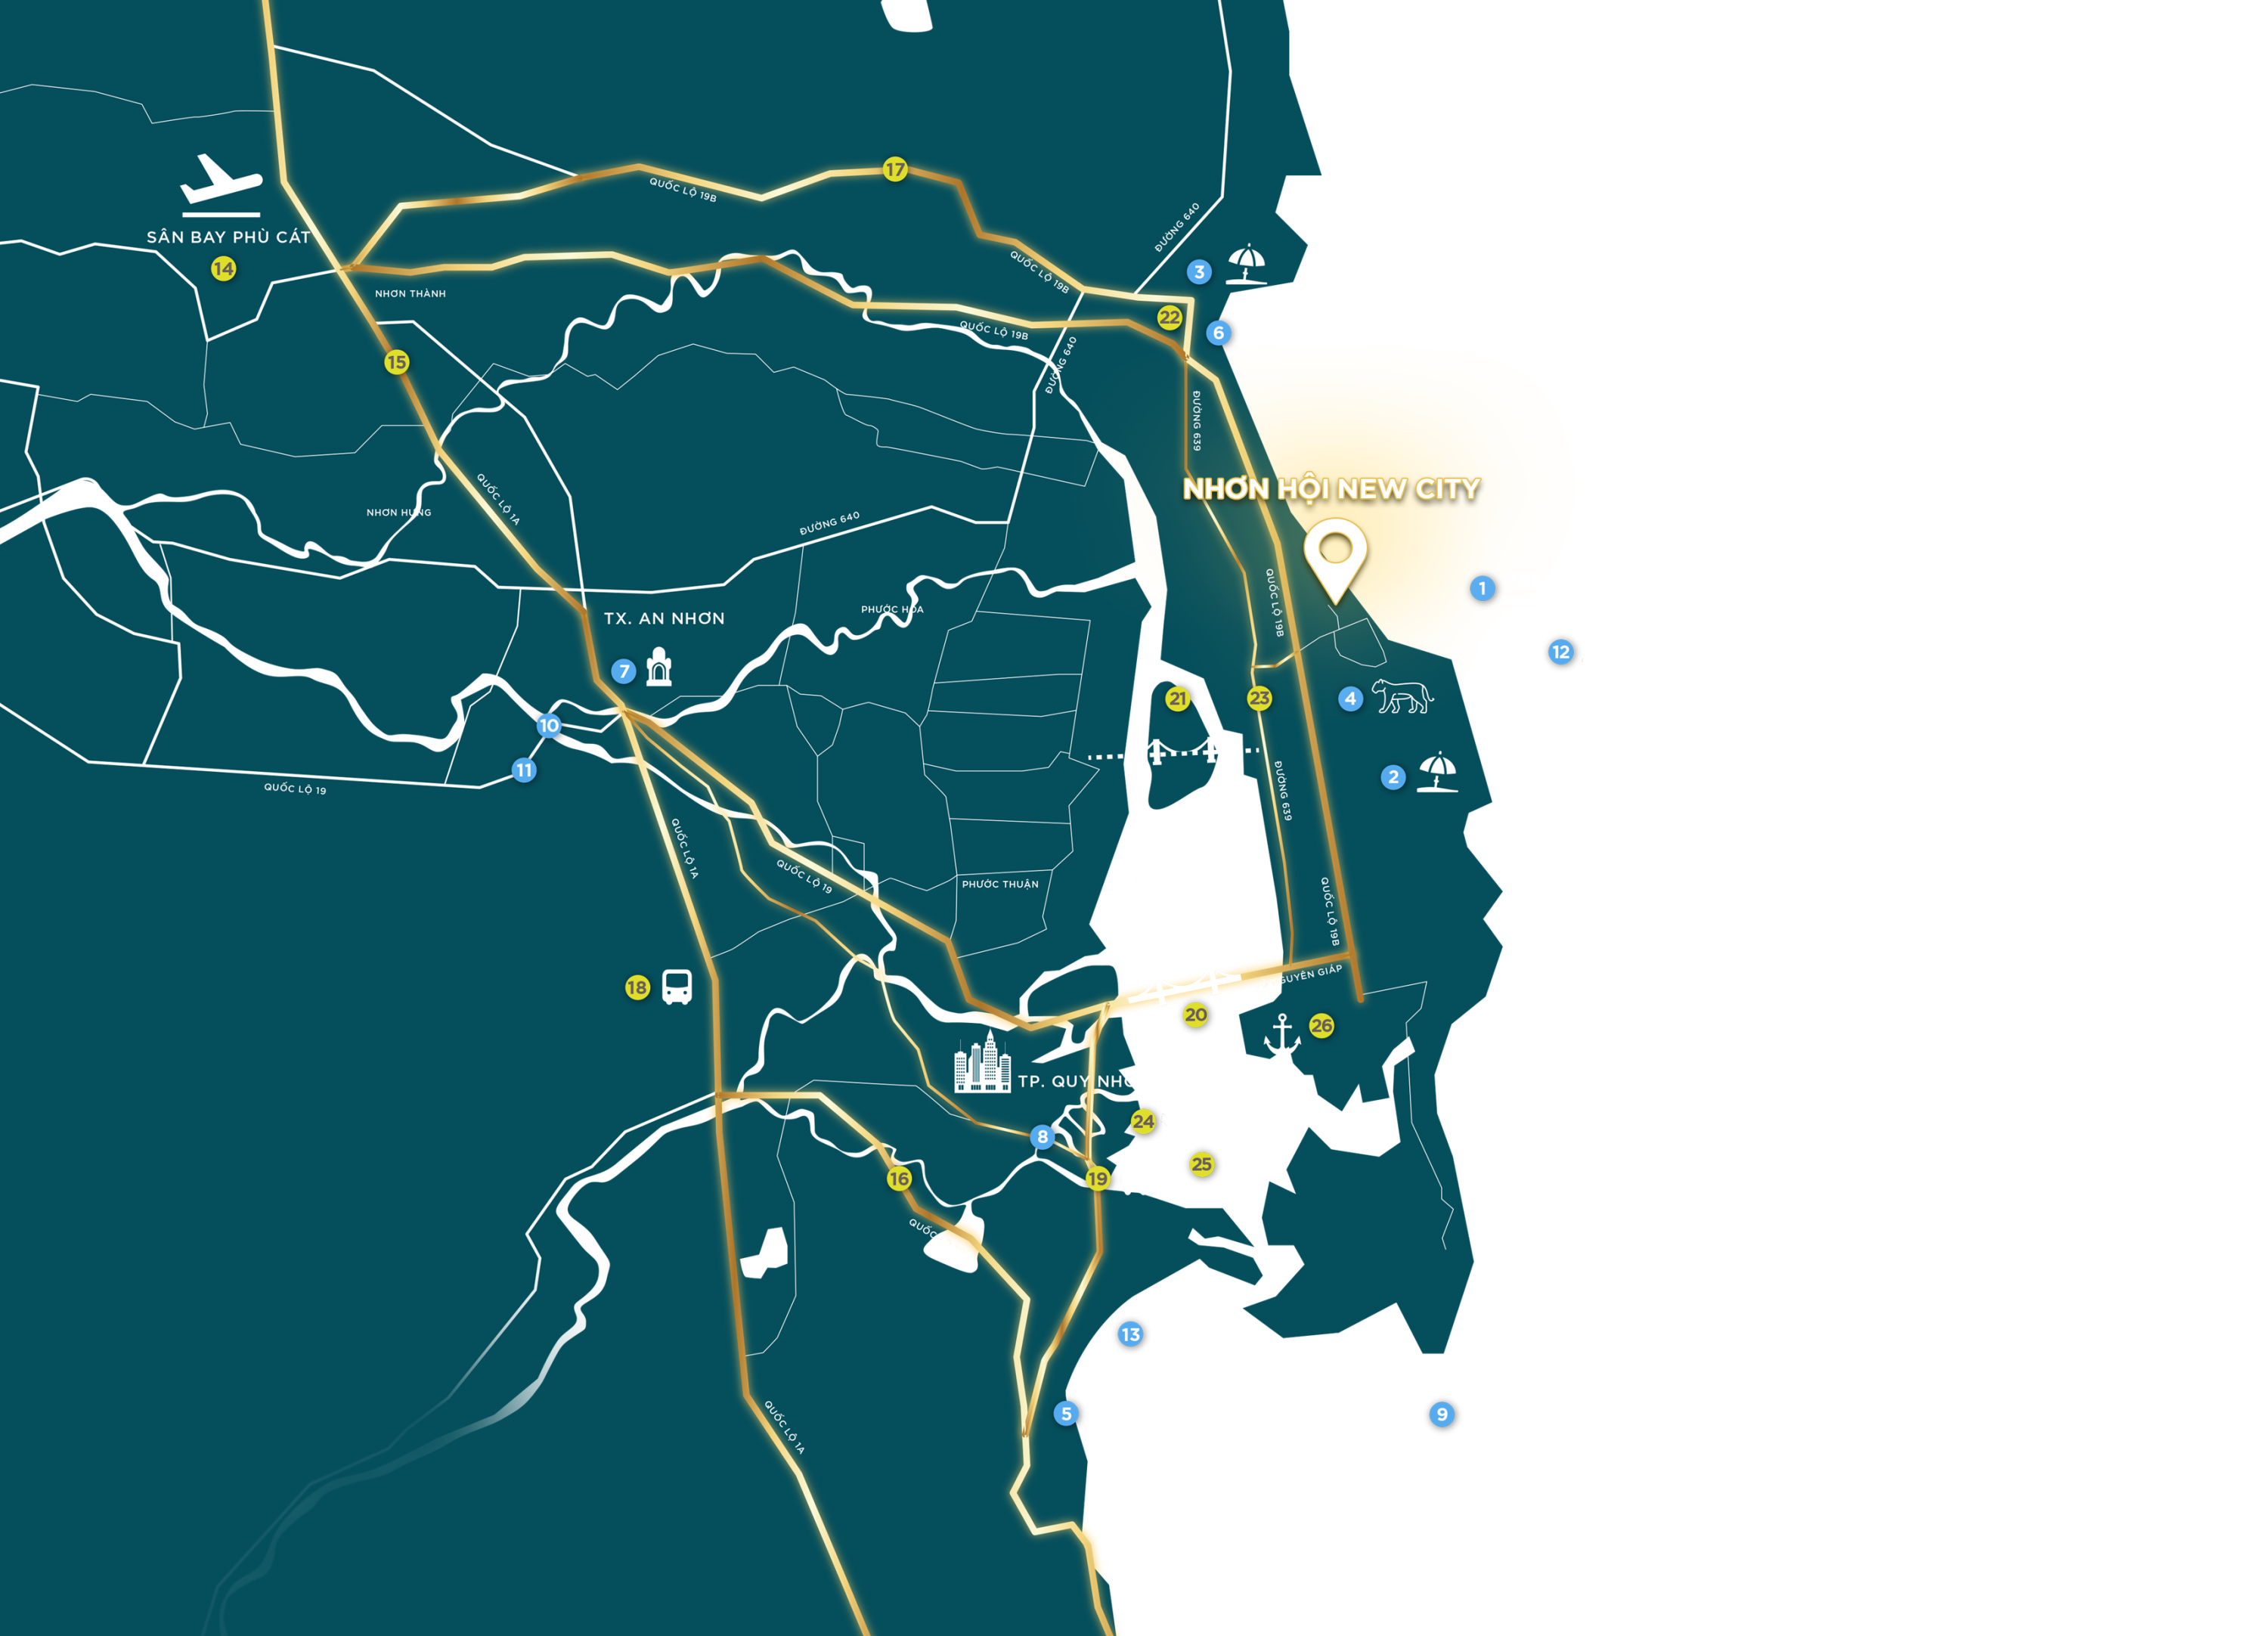 Trung tâm của đô thị Nhơn Hội – Quy Nhơn